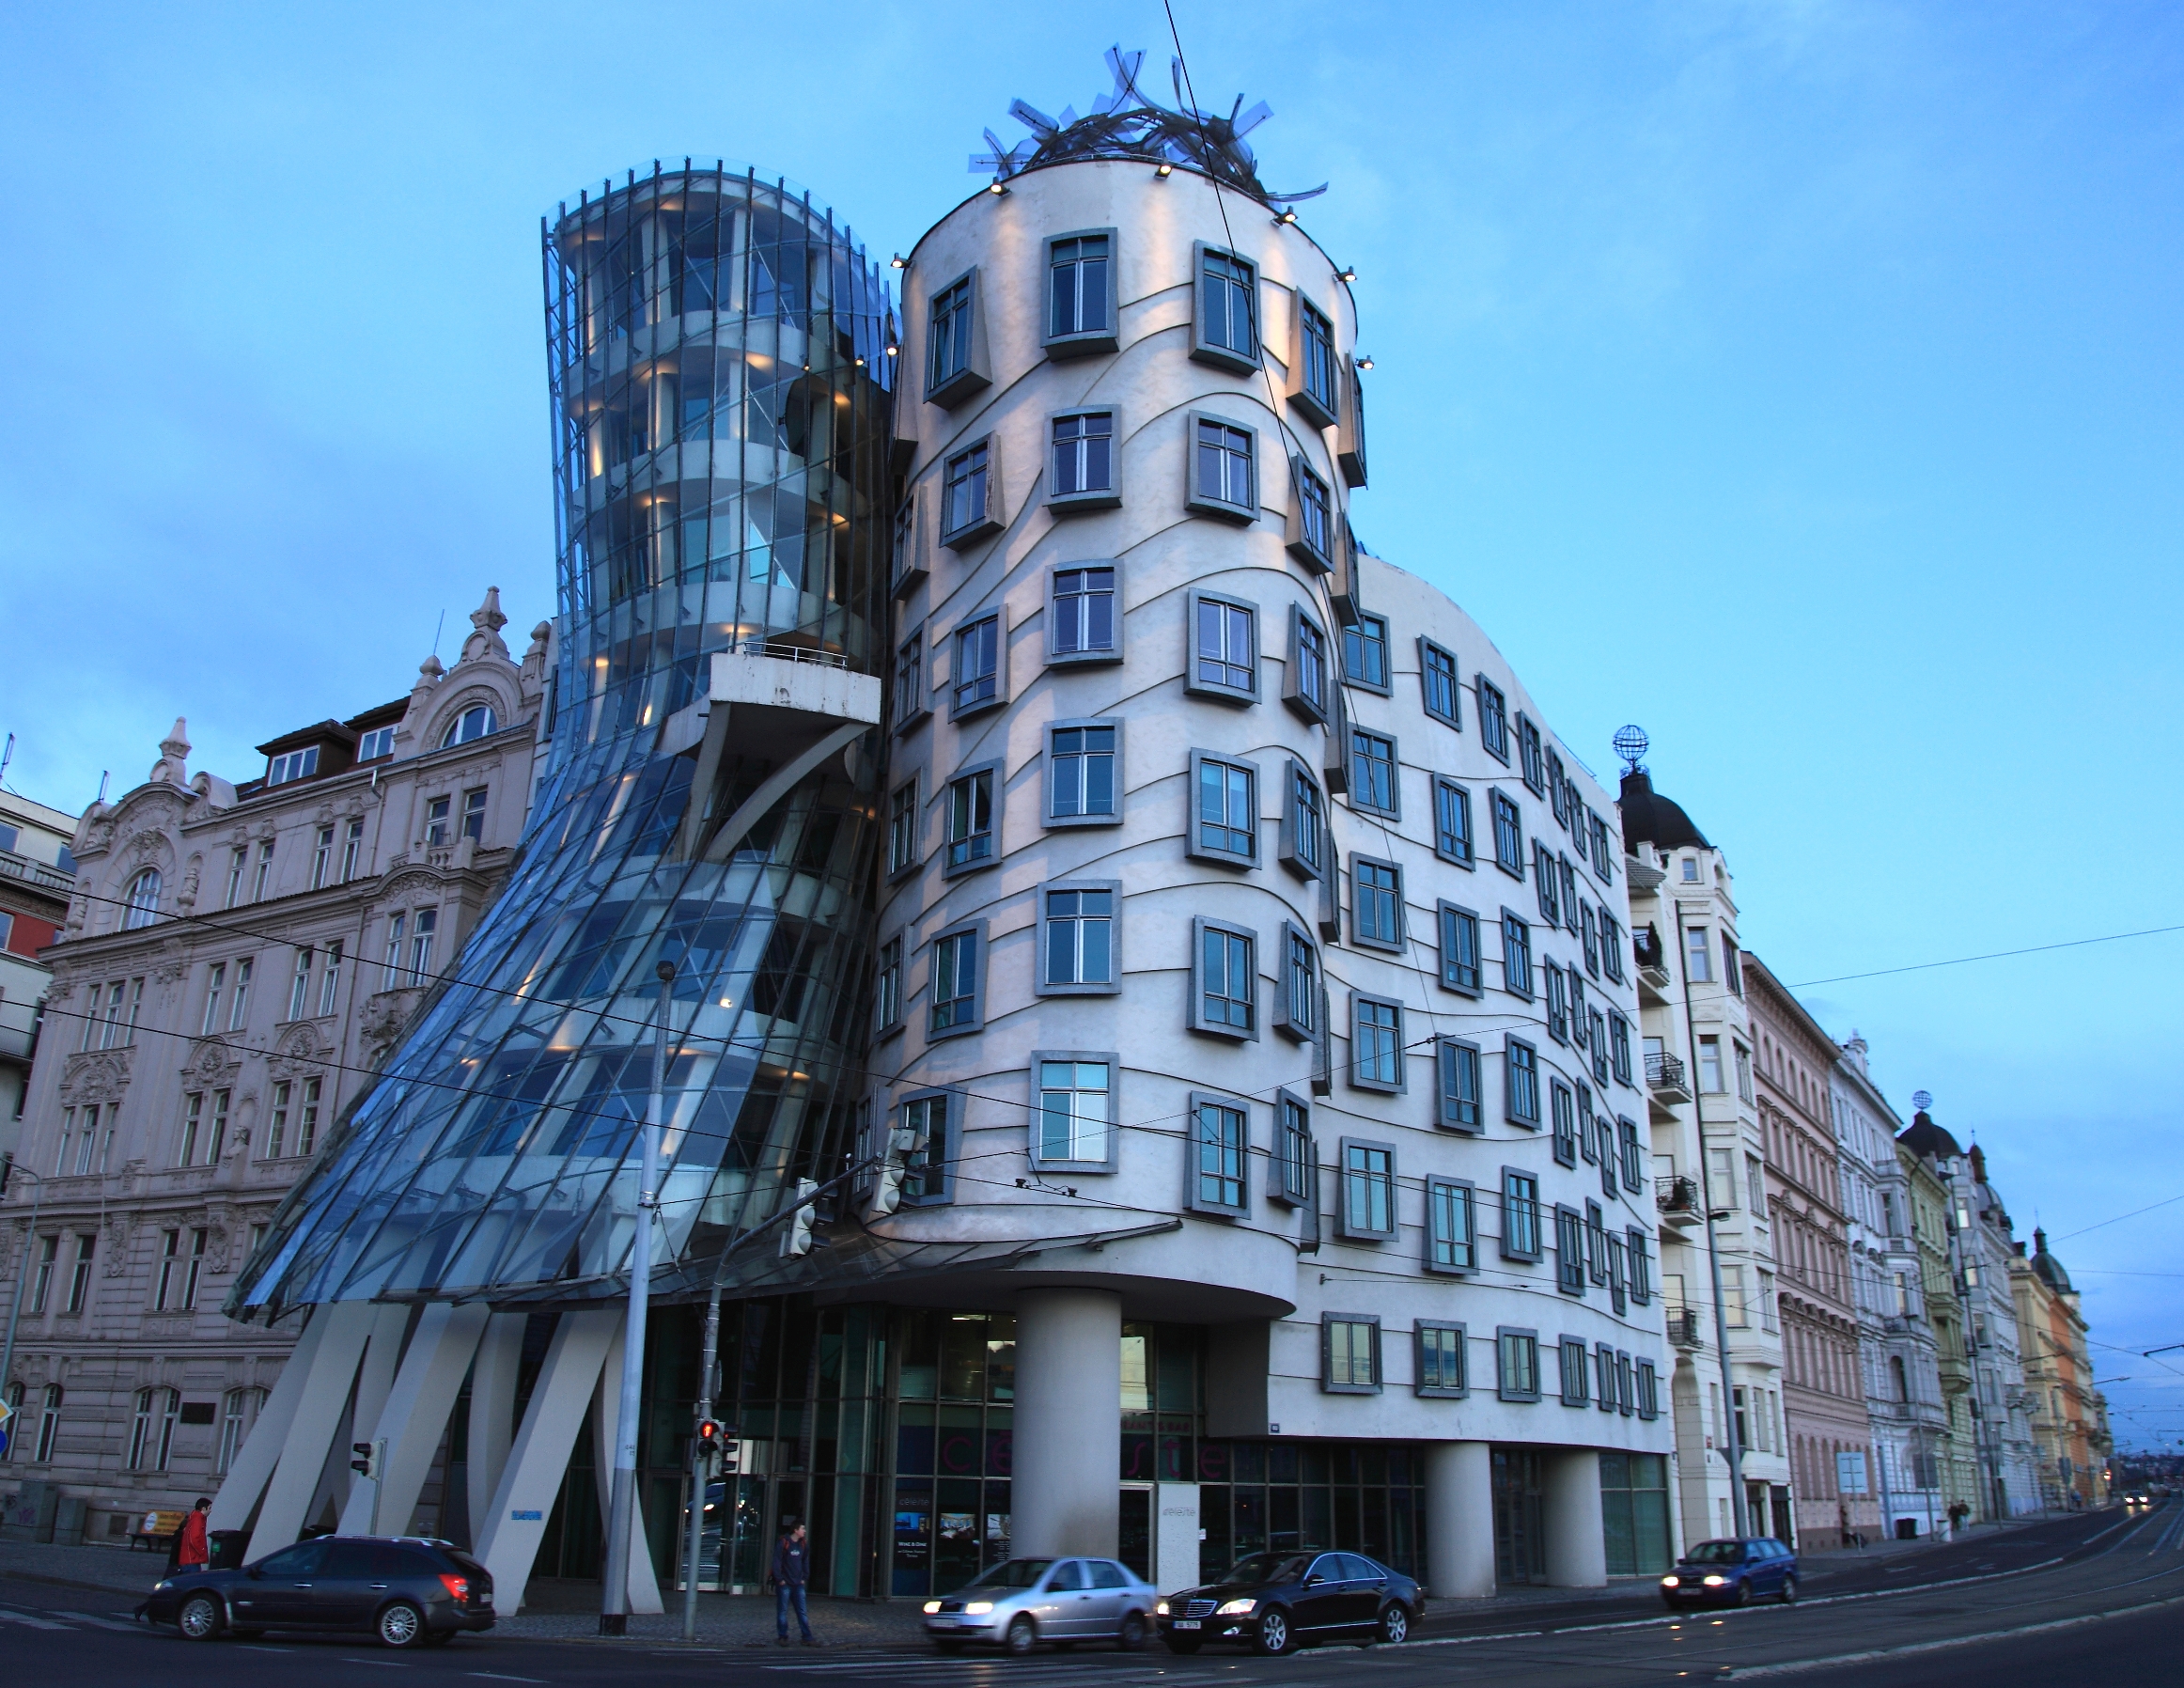 Самый знаменитый дом. Фрэнк Гери Деконструктивизм. Танцующий дом в Праге. Танцующий дом Прага Чехия Архитектор Фрэнк Гери. Деконструктивизм в архитектуре 20 века.